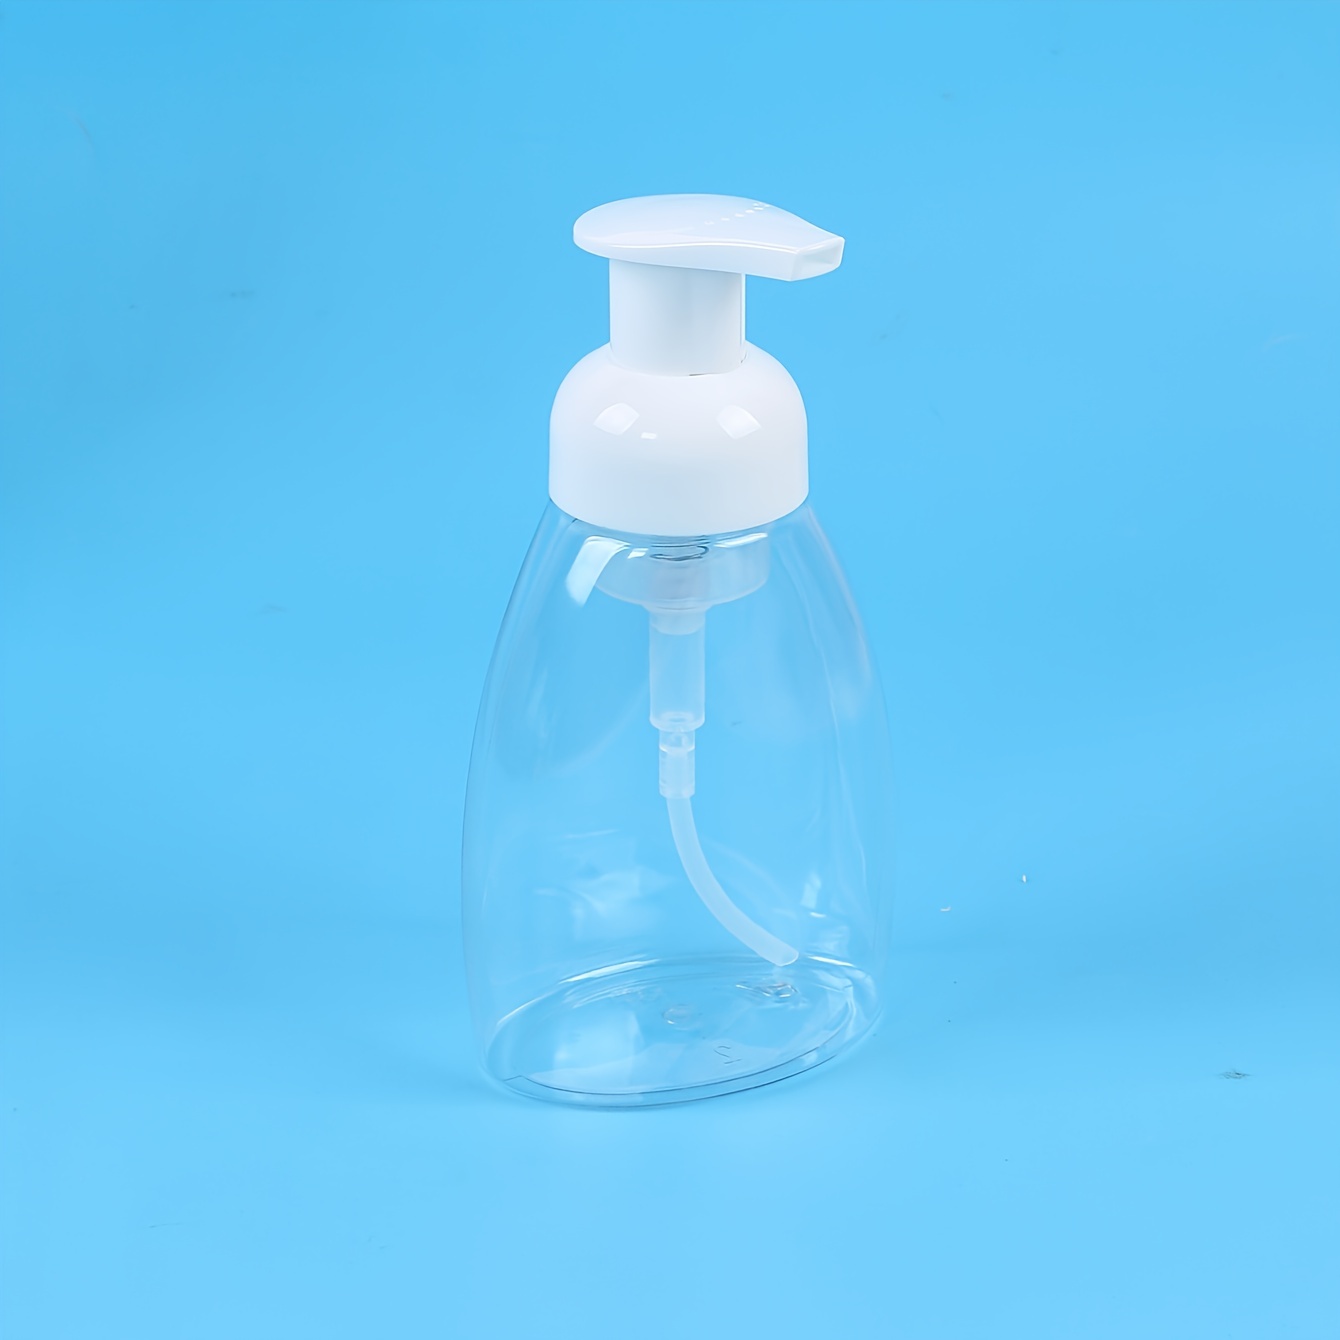 Distributeur de savon en verre vide pour recharge de savon liquide